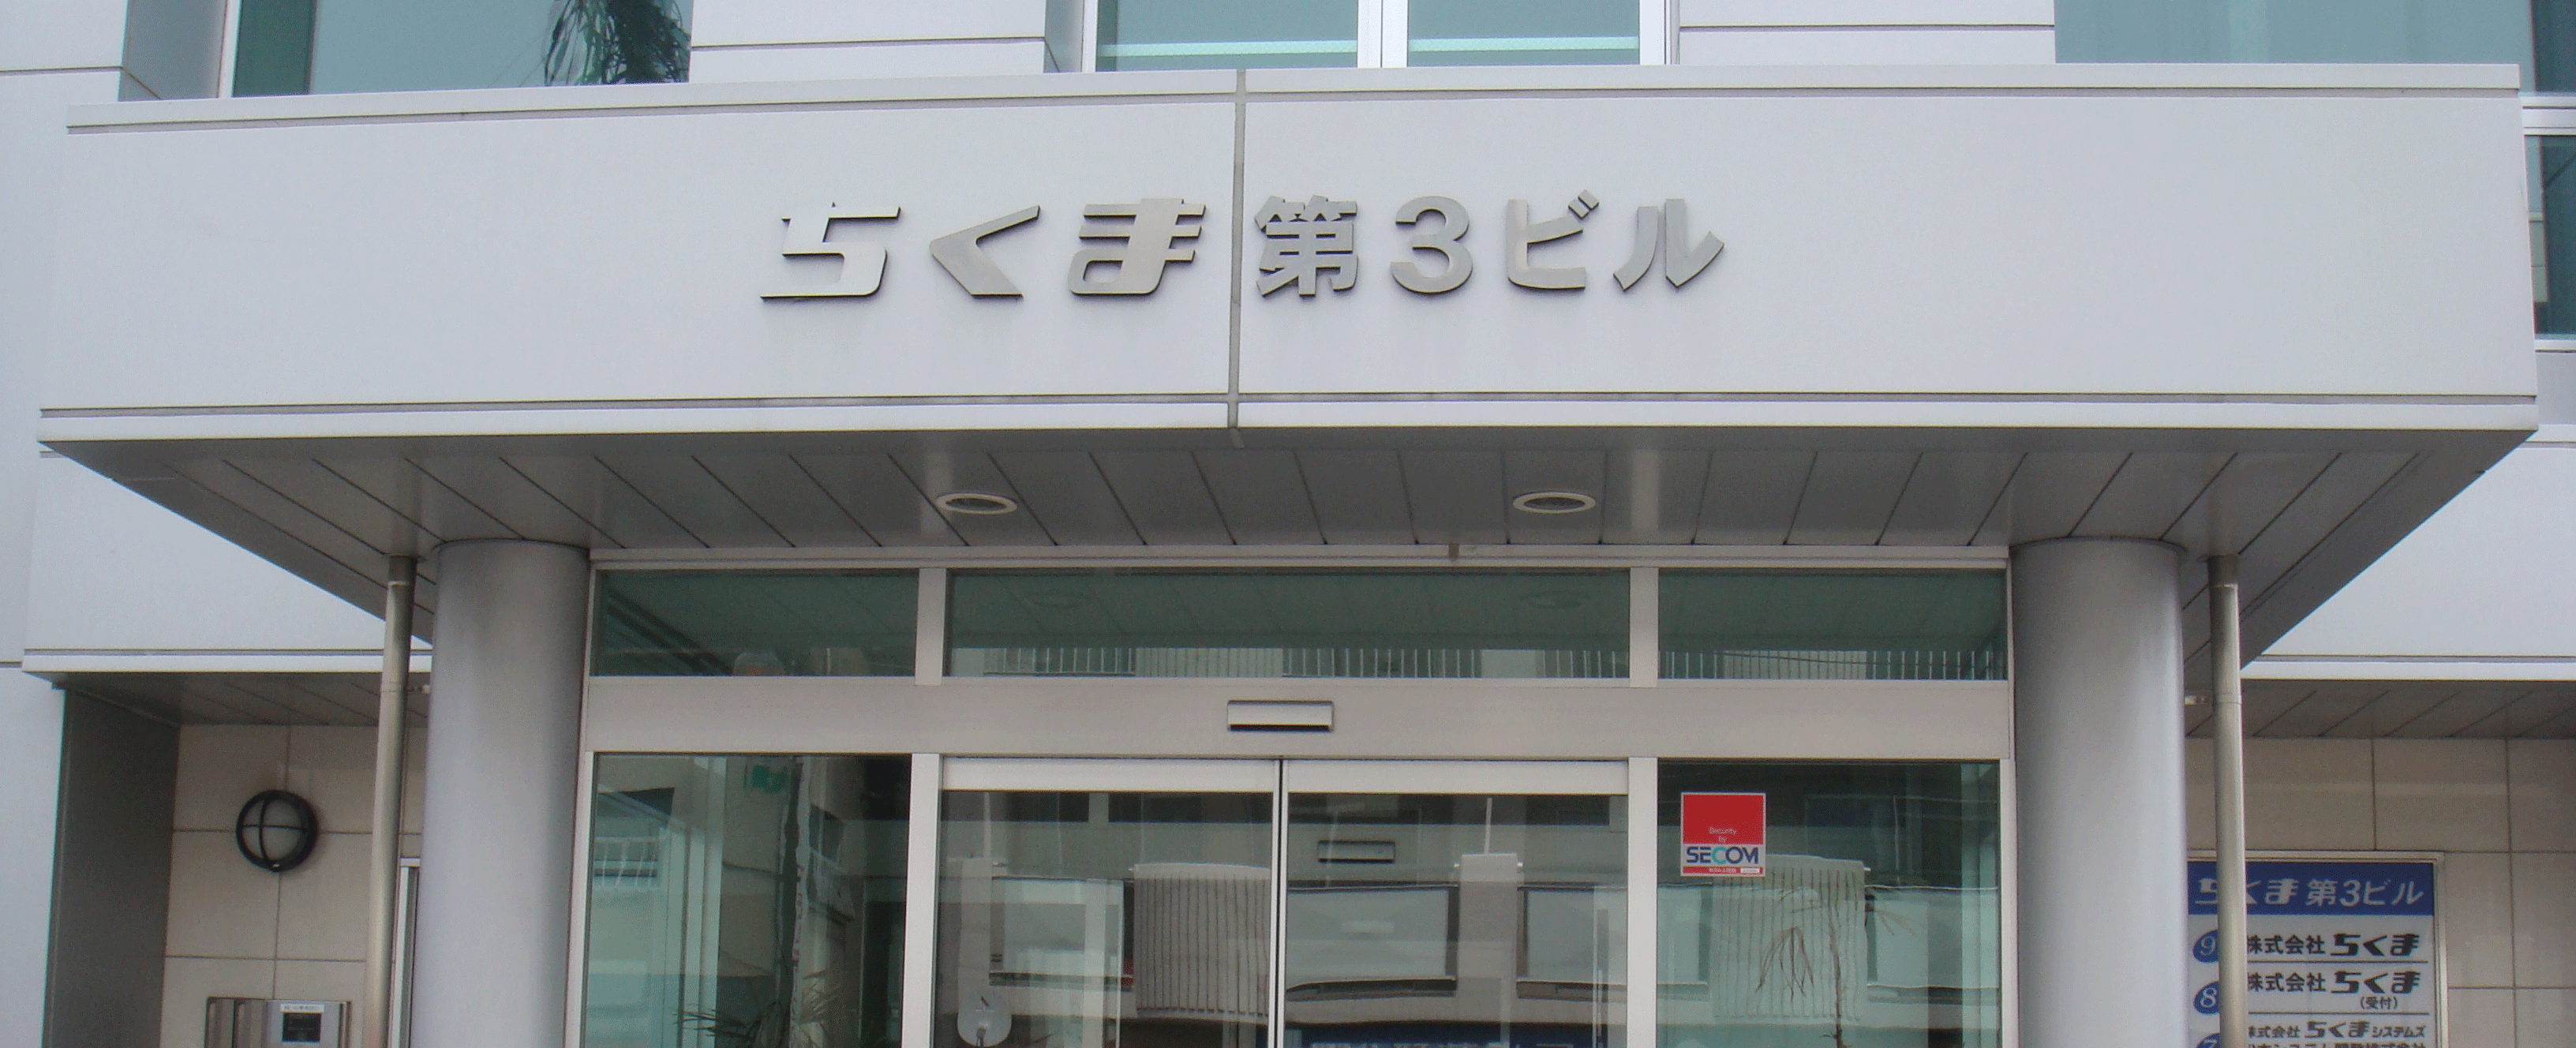 SAKURA松本センター